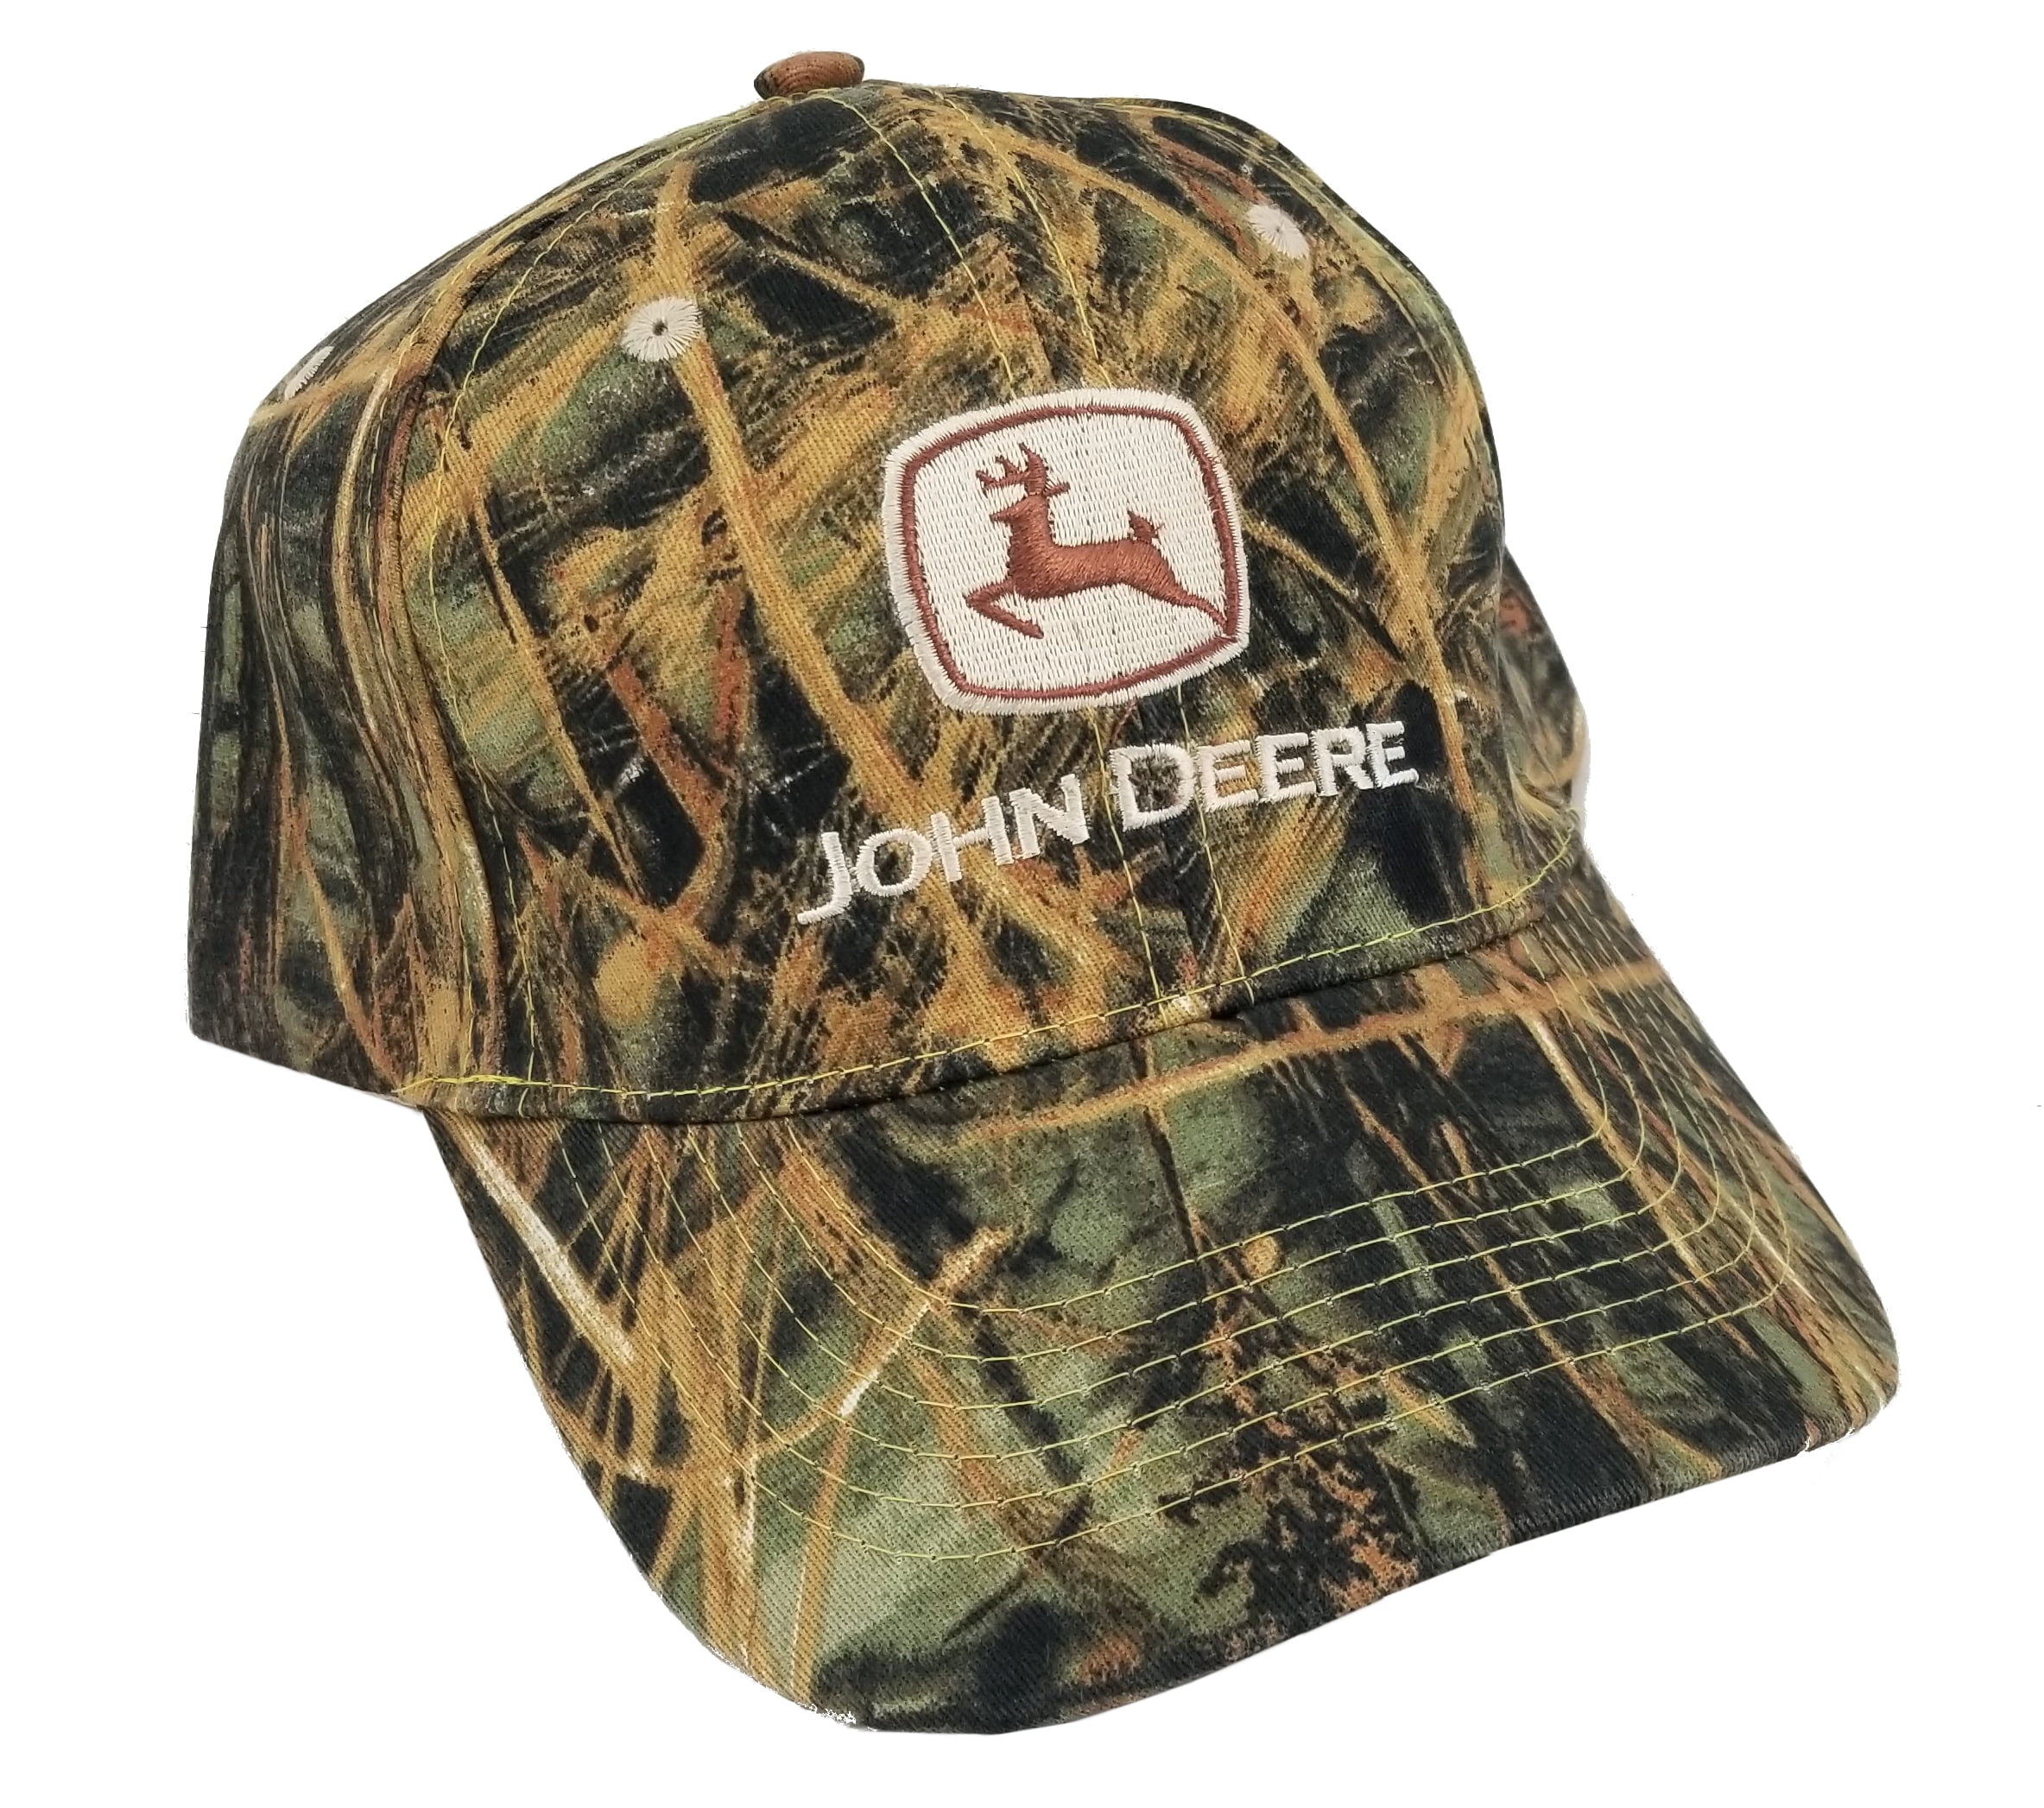 John Deere - John Deere Men's Limited Edition Camo Hat/Cap